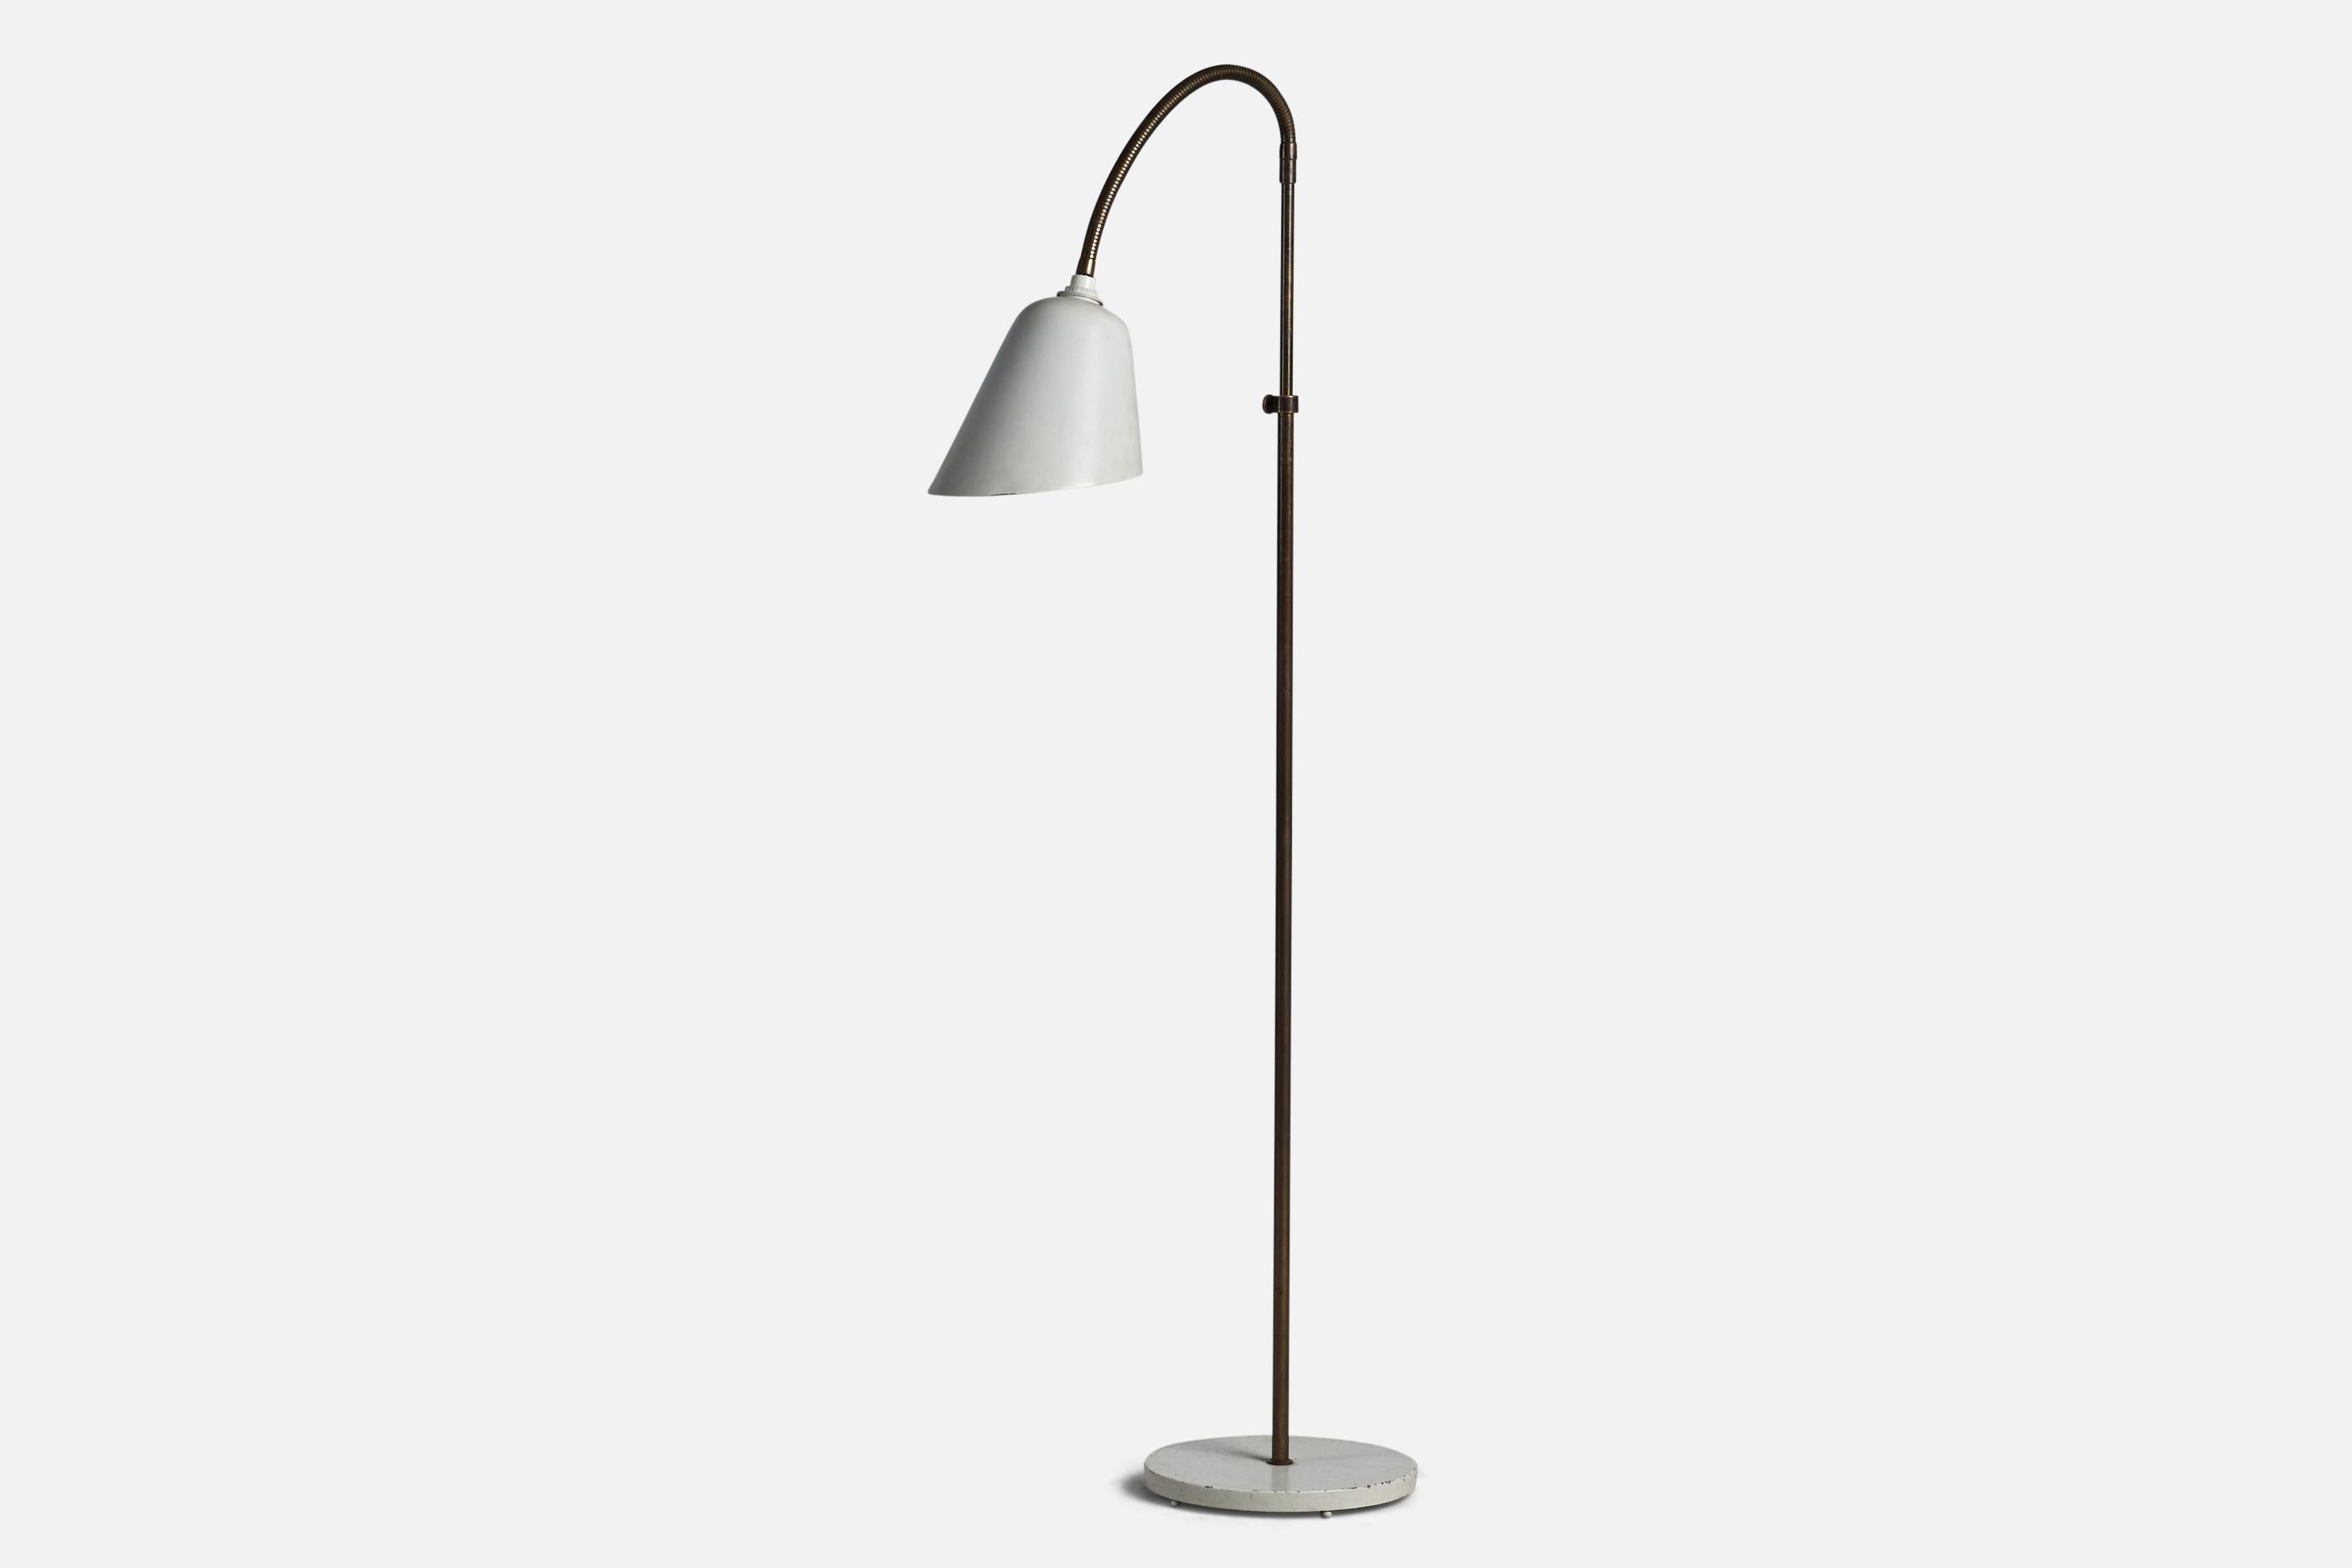 Lampadaire réglable en laiton et métal laqué blanc conçu par Arne Jacobsen et produit par Louis Poulsen, Danemark, C.C.

Dimensions globales (pouces) : 52.75